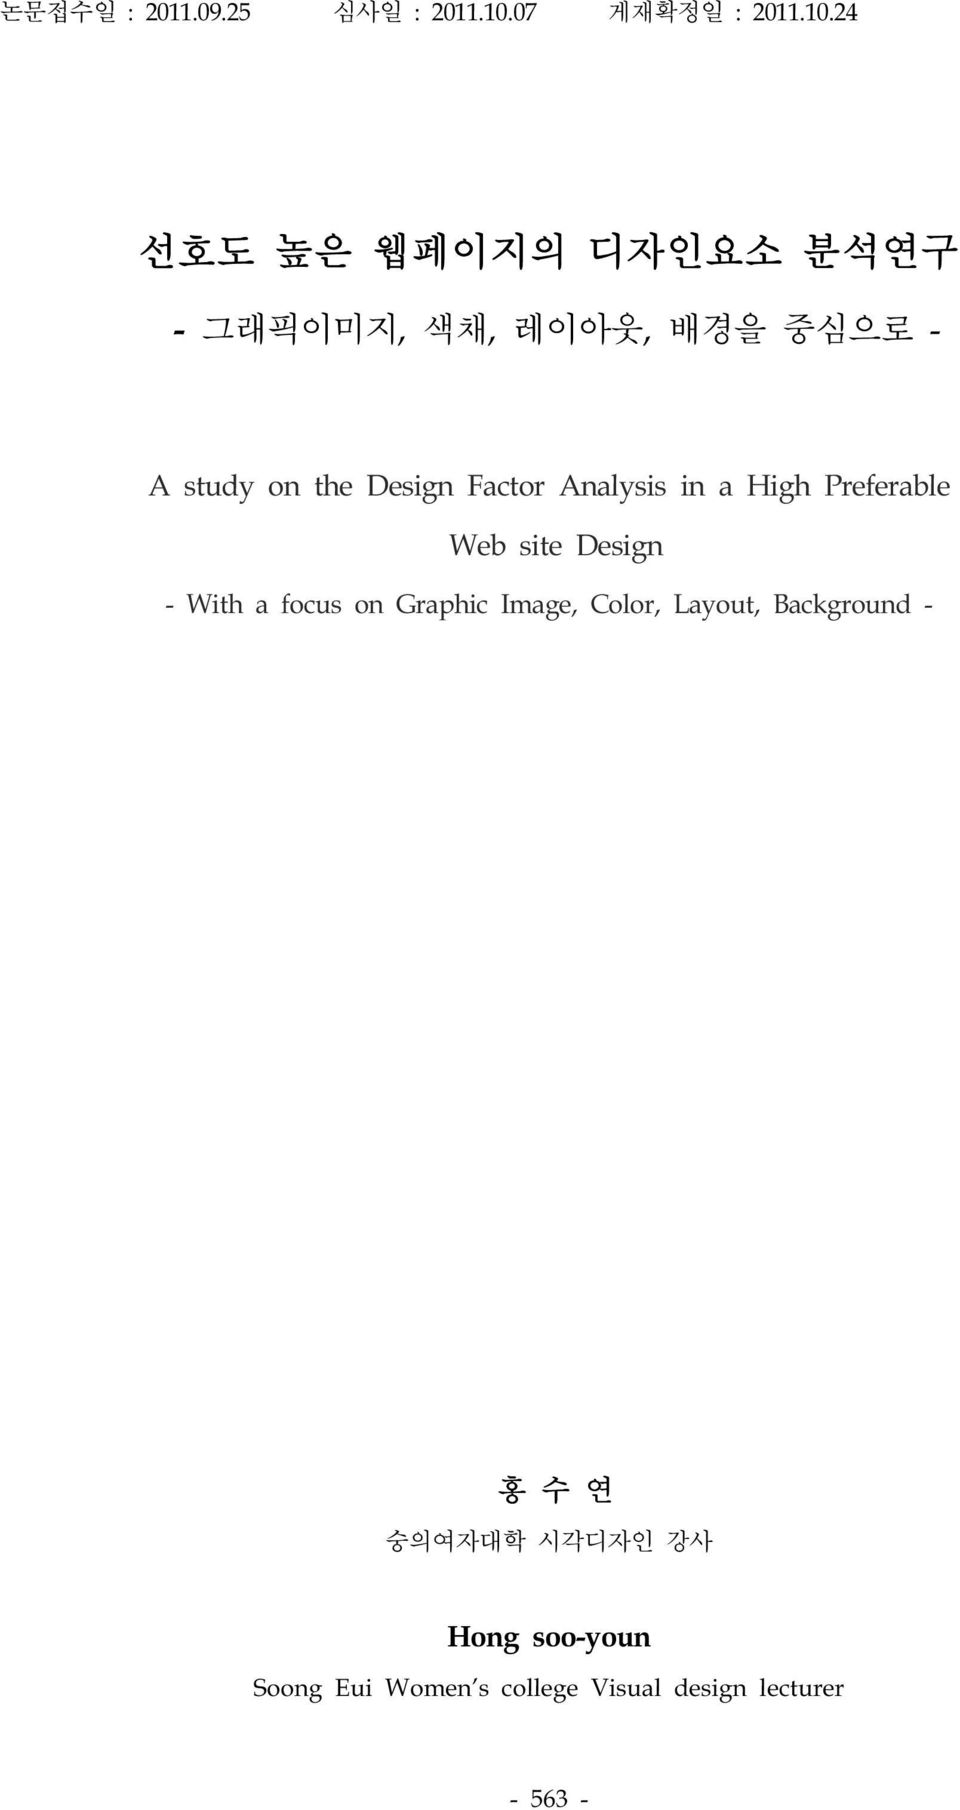 24 선호도 높은 웹페이지의 디자인요소 분석연구 - 그래픽이미지, 색채, 레이아웃, 배경을 중심으로 - A study on the Design